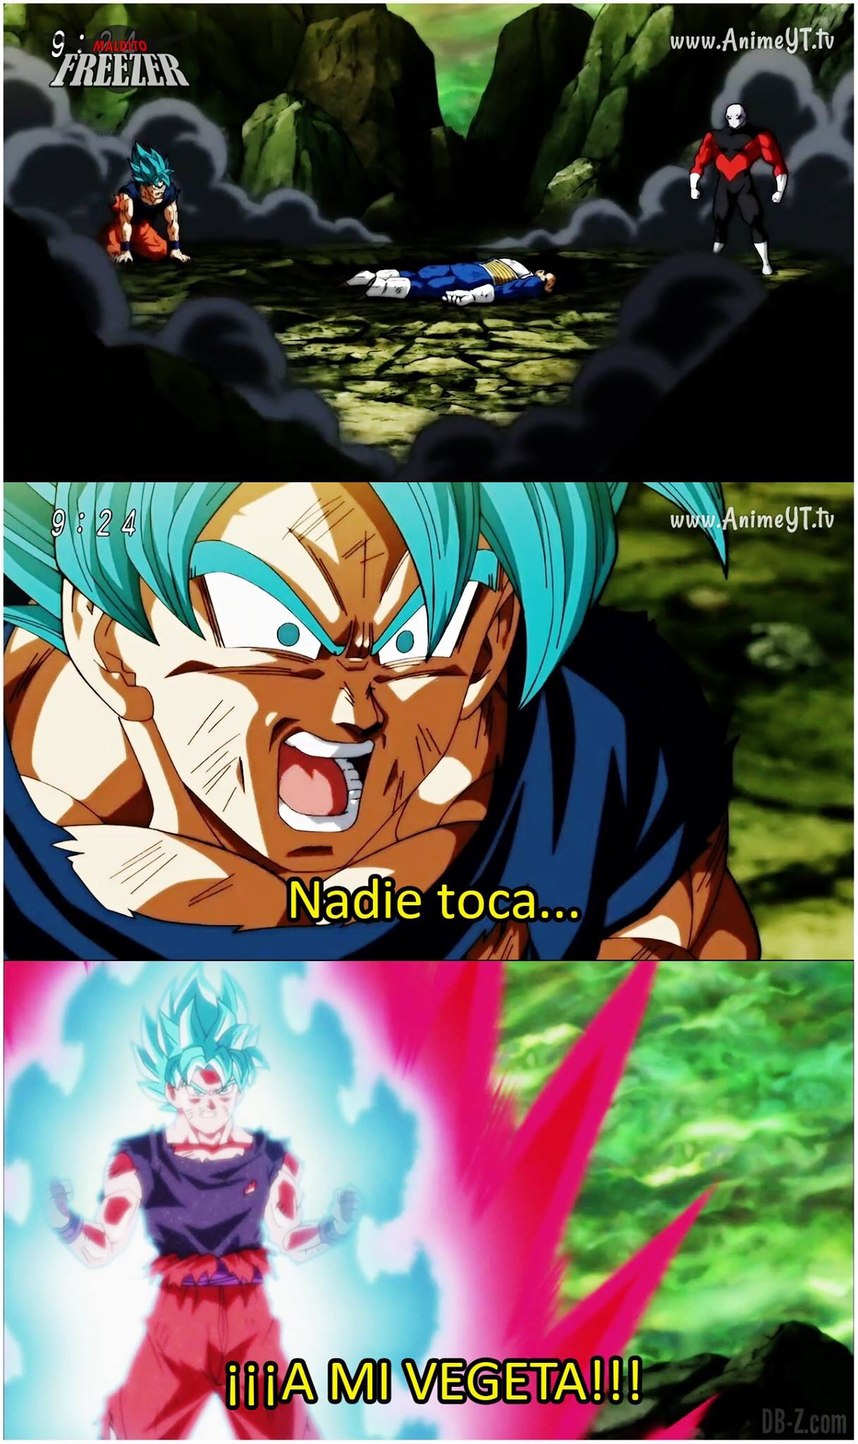 Este Goku - meme